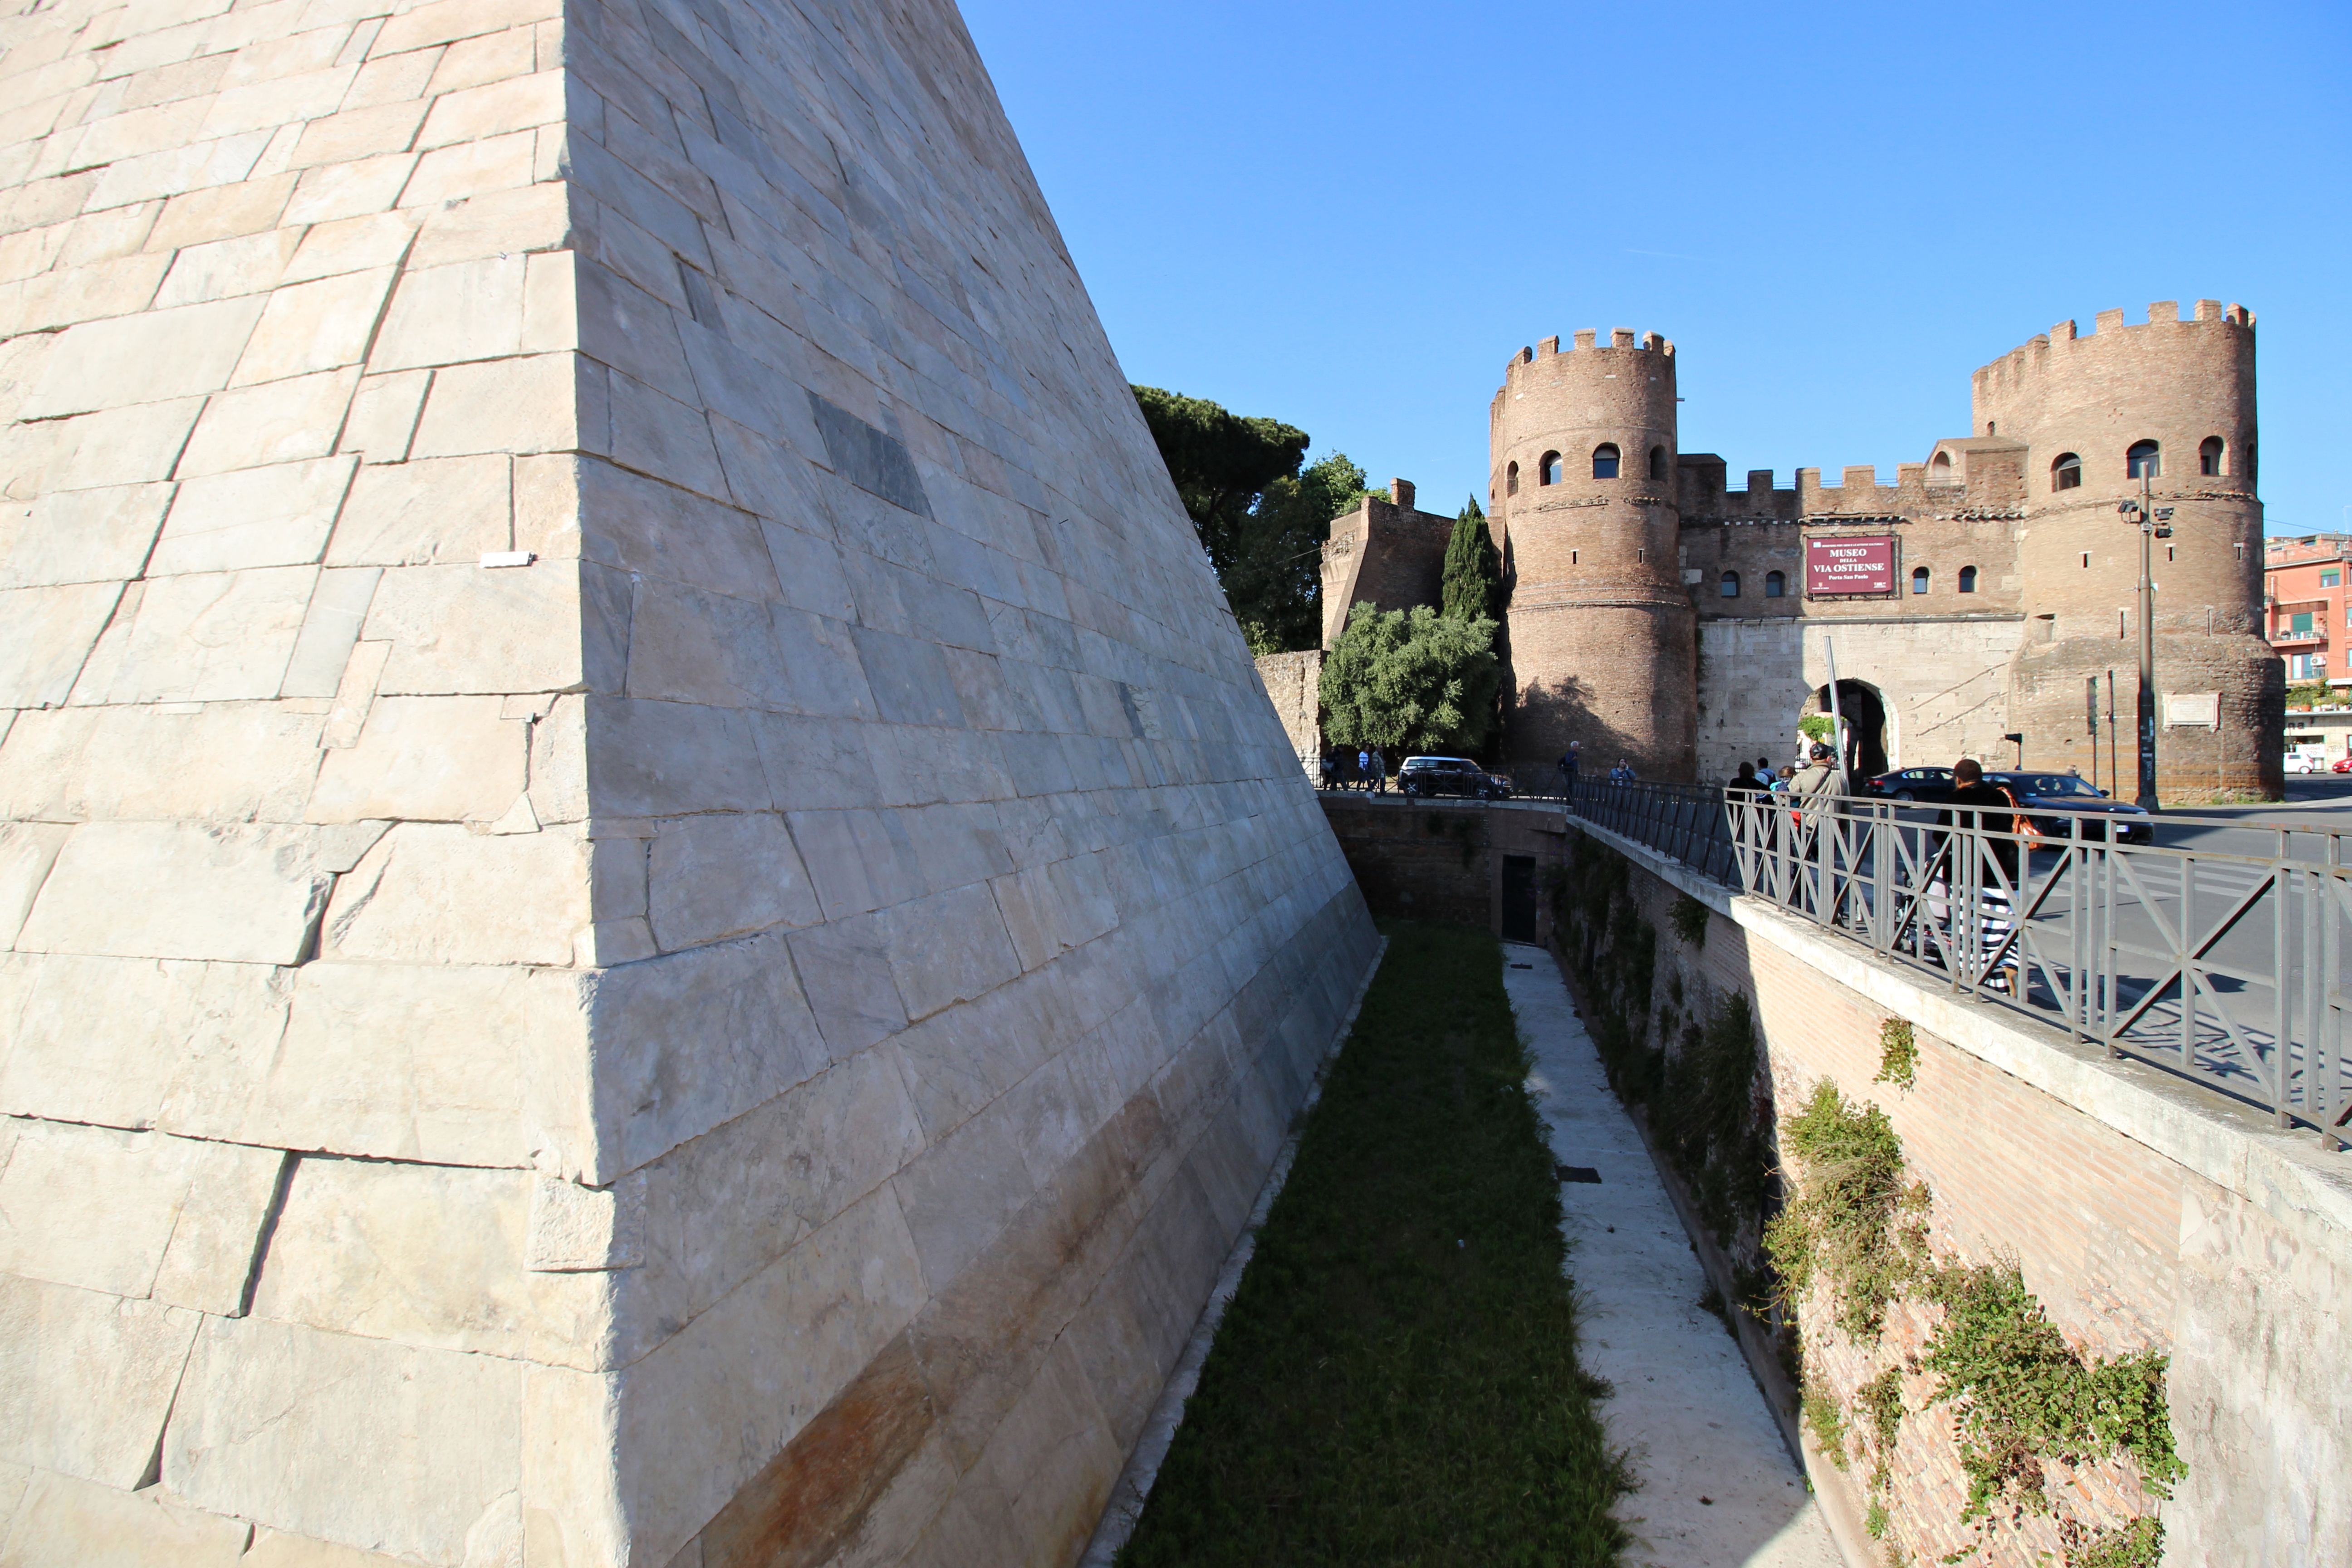 The Aurelian Walls – Part 2